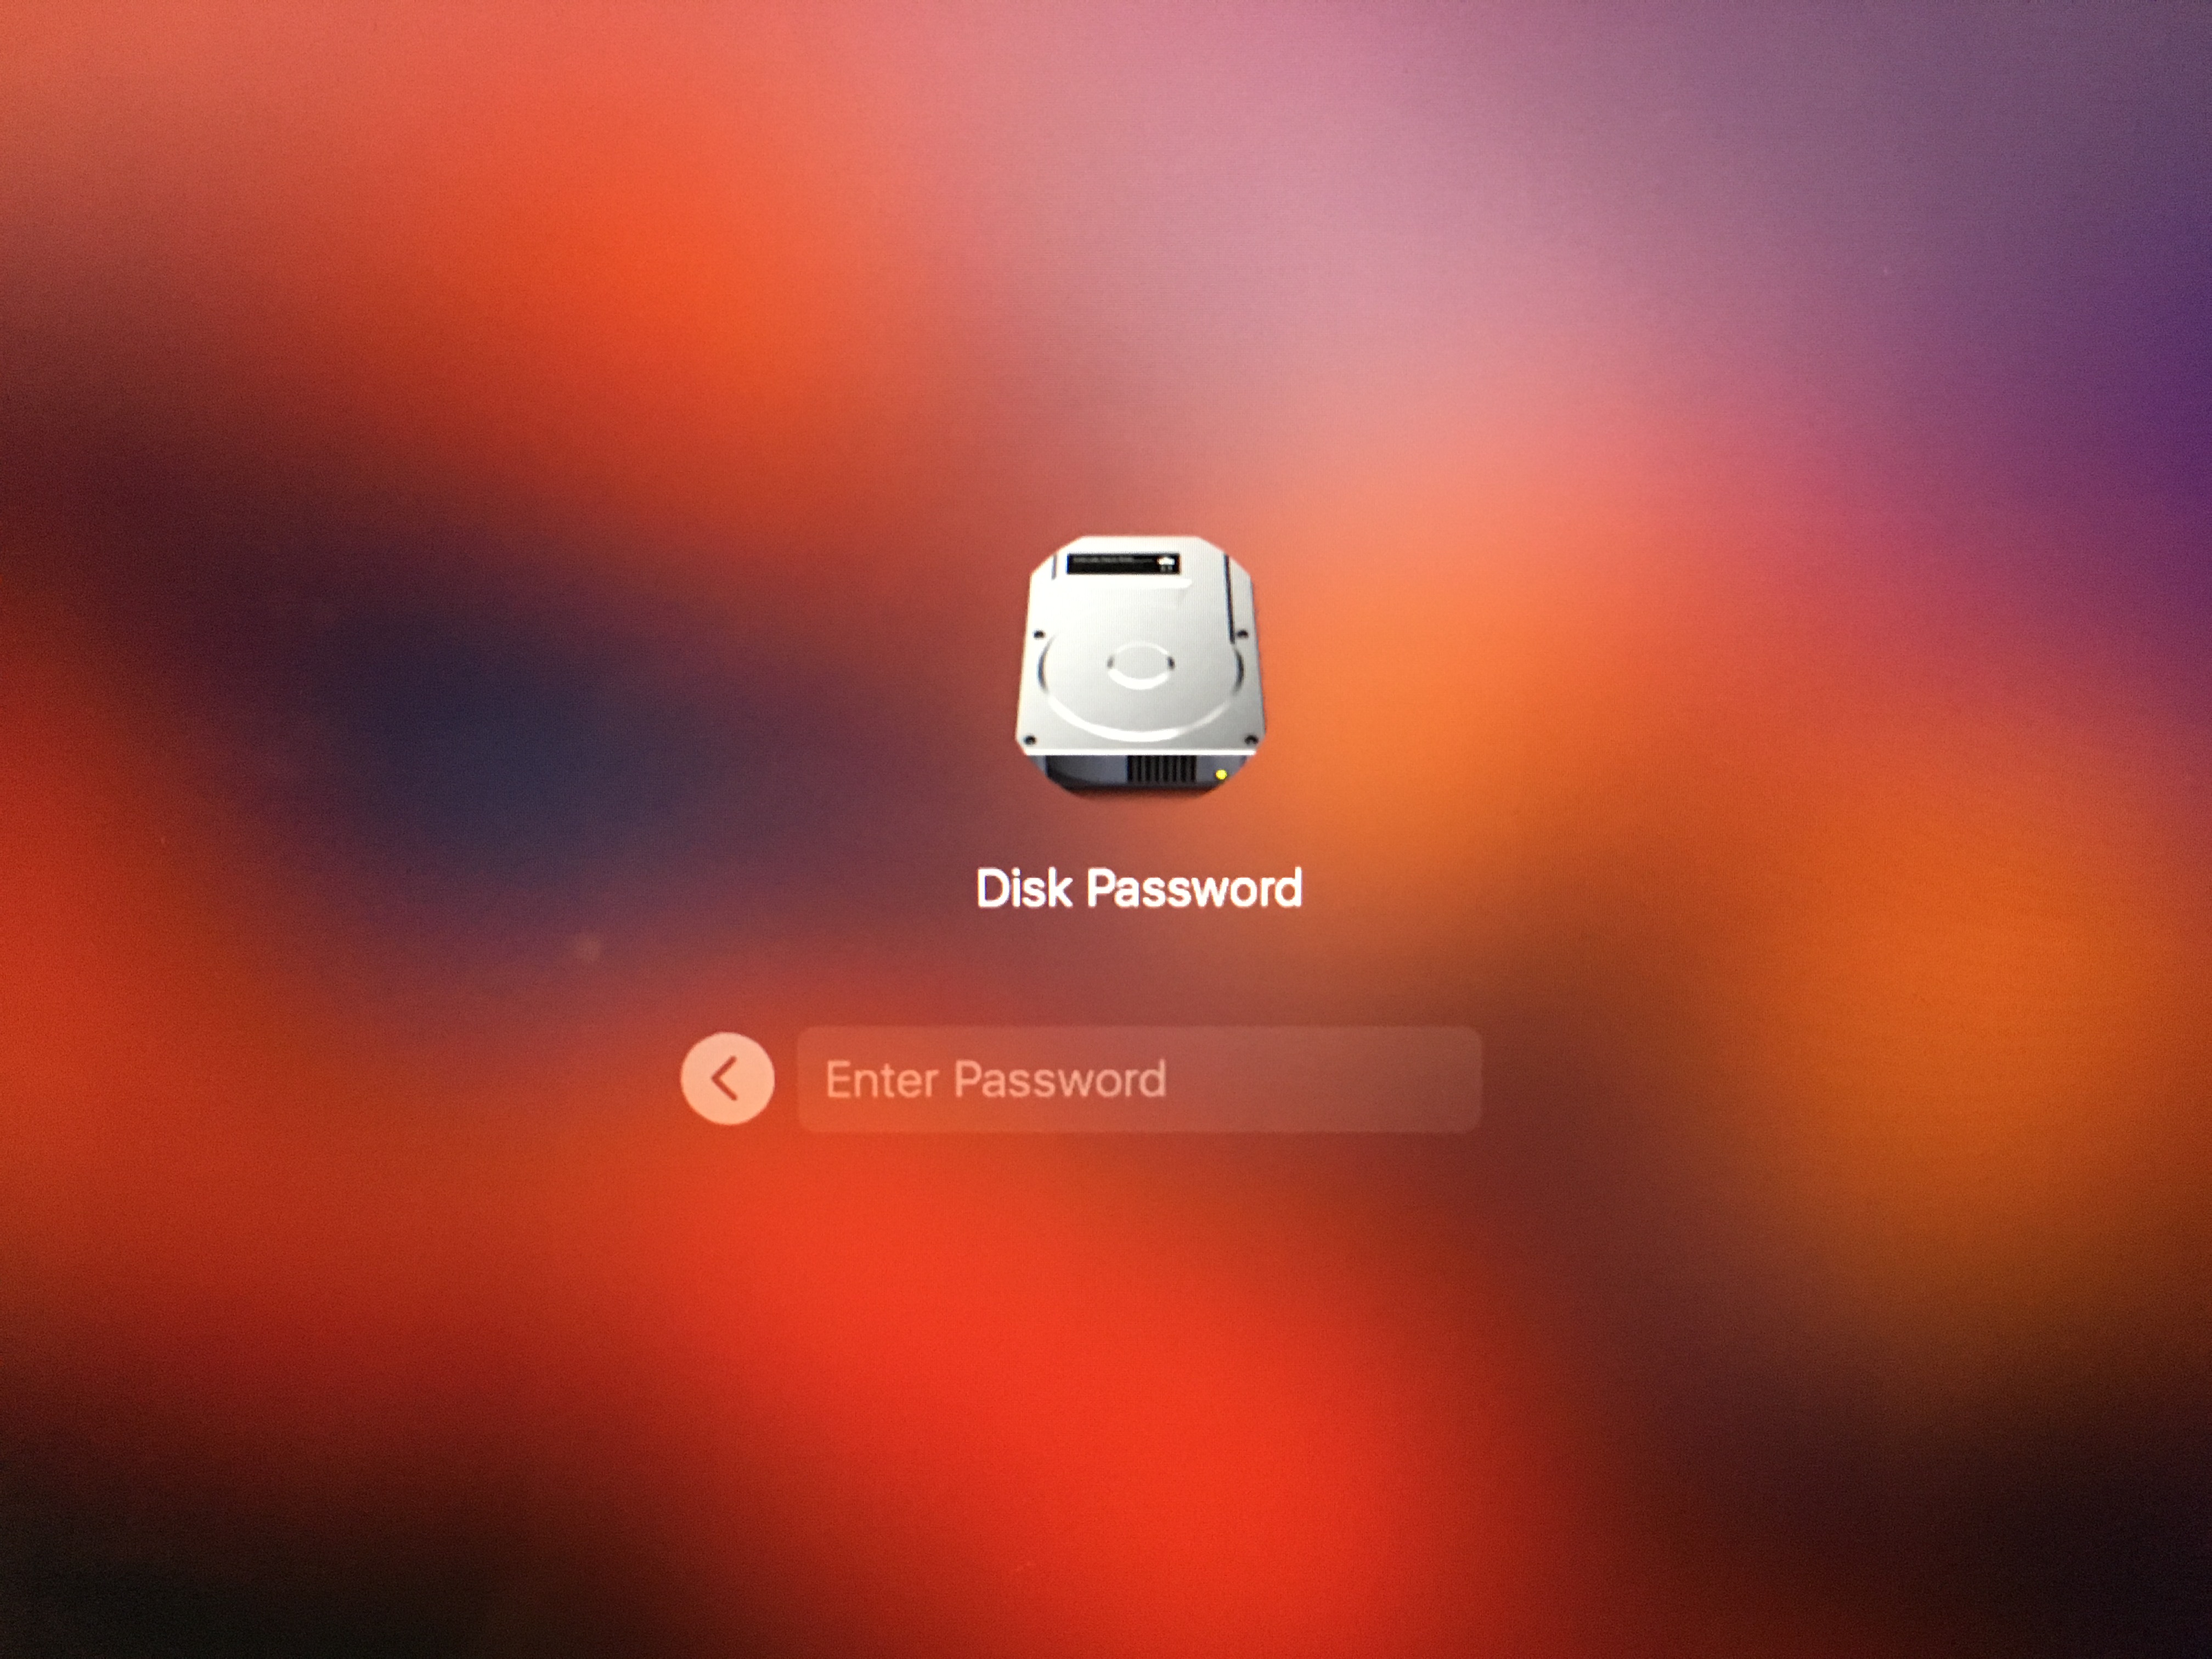 Disk password